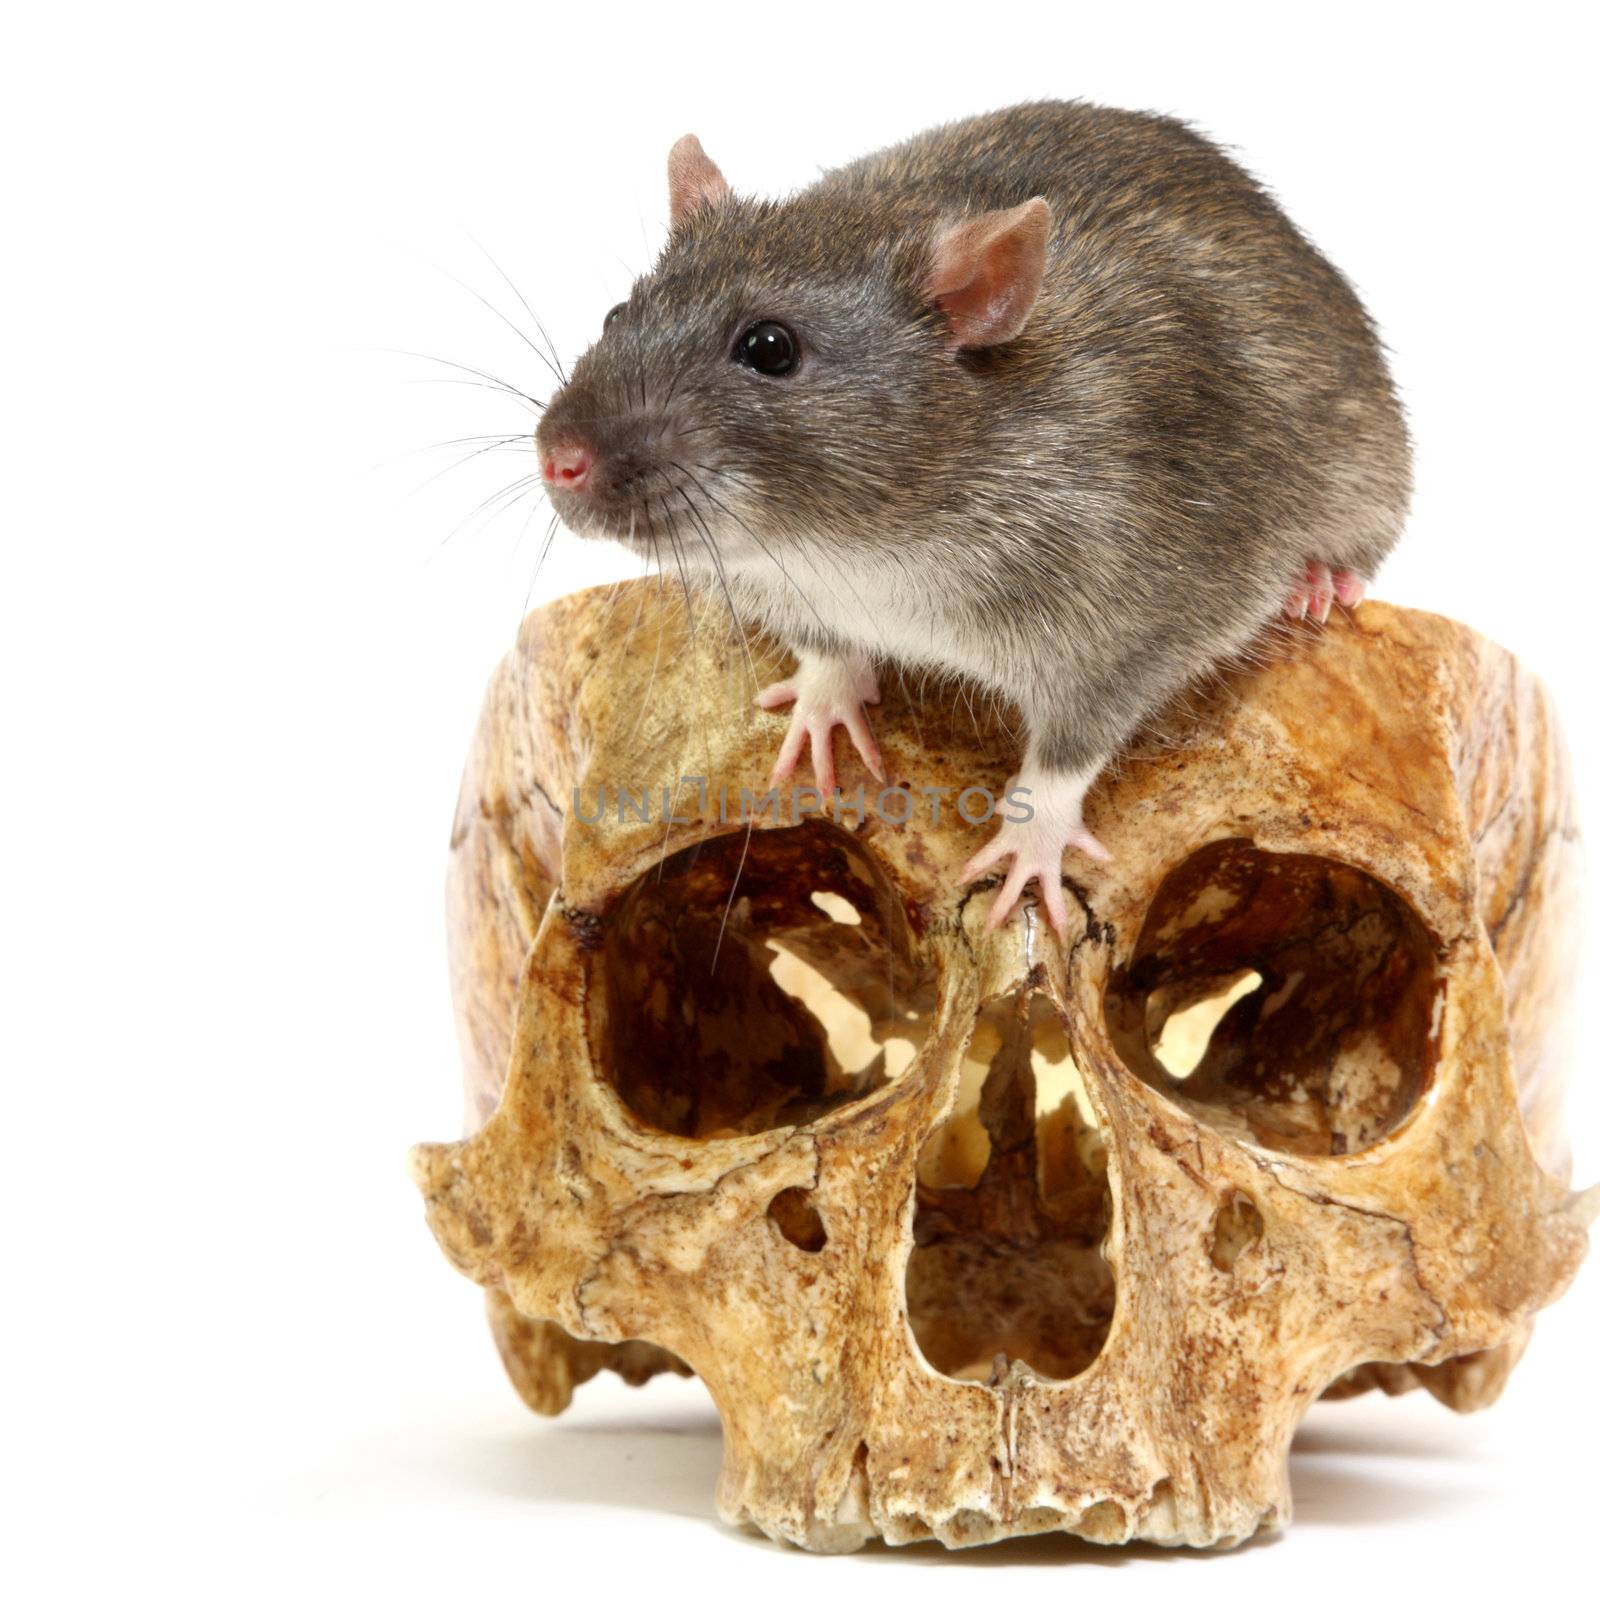 The big grey rat in a human skull